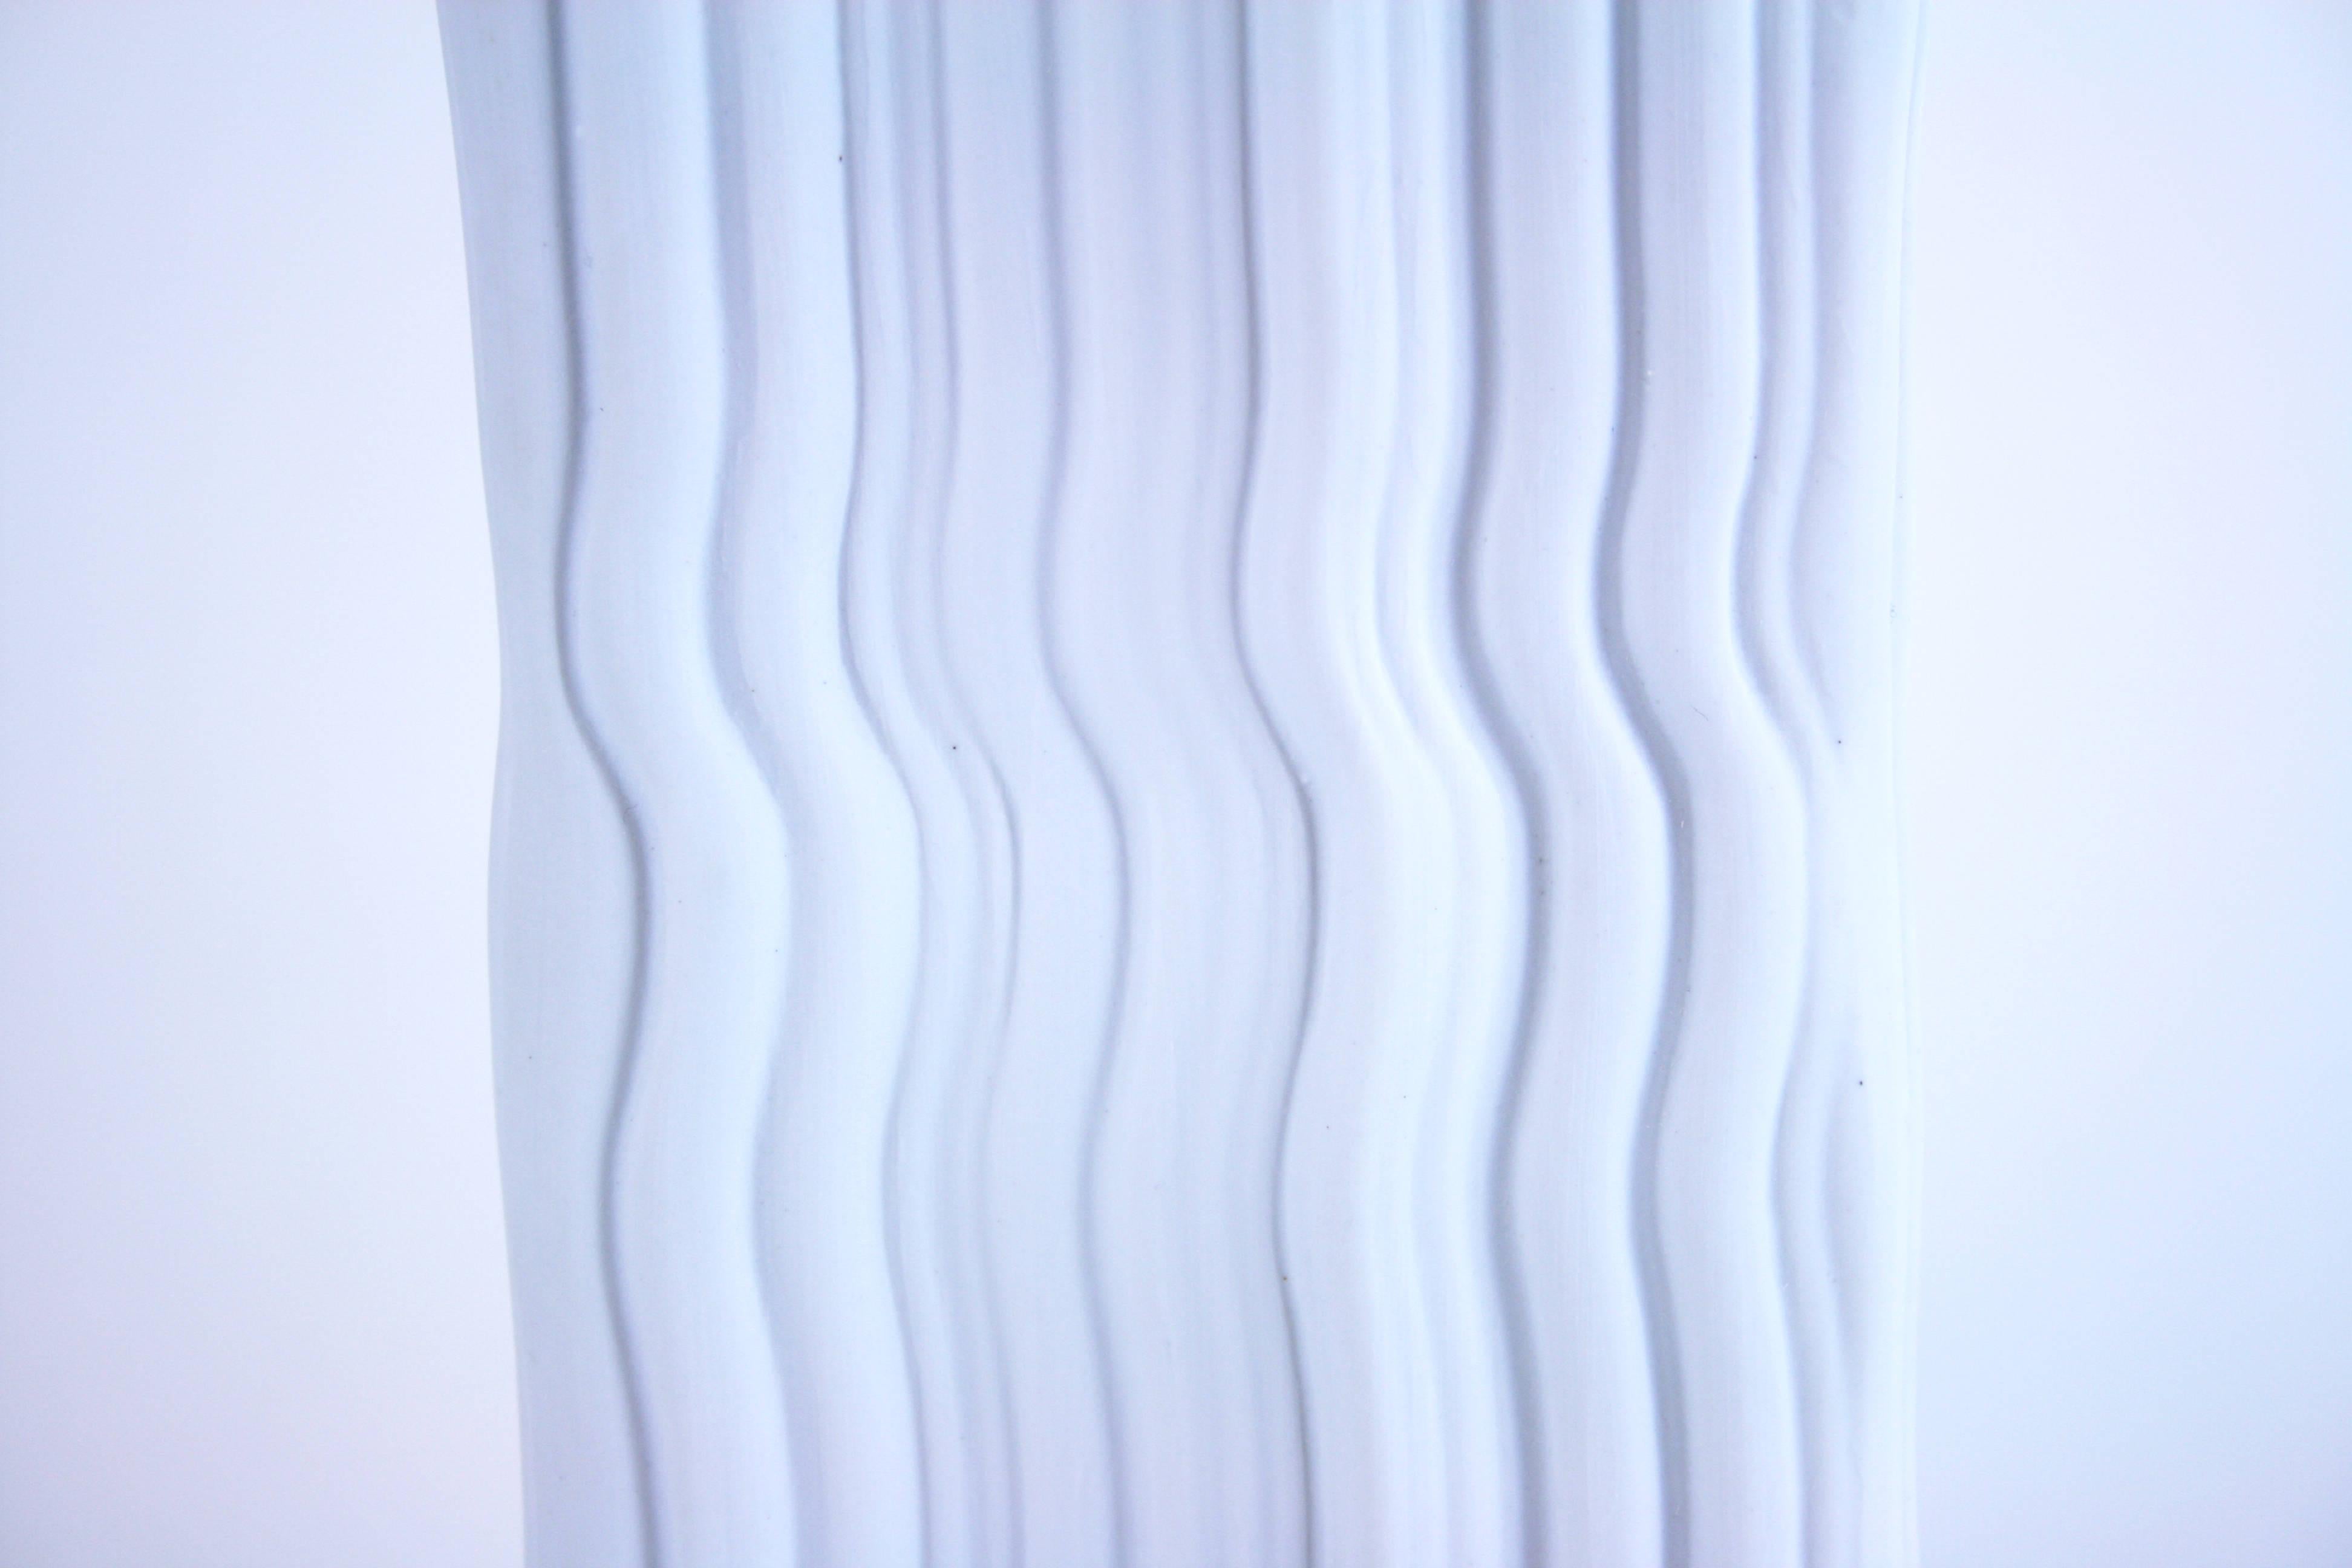 Vase aus weißem Bisquit-Porzellan, Design von Naaman Israel, 1990er Jahre. Ein interessantes Beispiel für die aufstrebende Designgemeinschaft in Israel in den 1990er Jahren. Sie basiert auf der Form- und Materialdefinition der klassischen Vase,